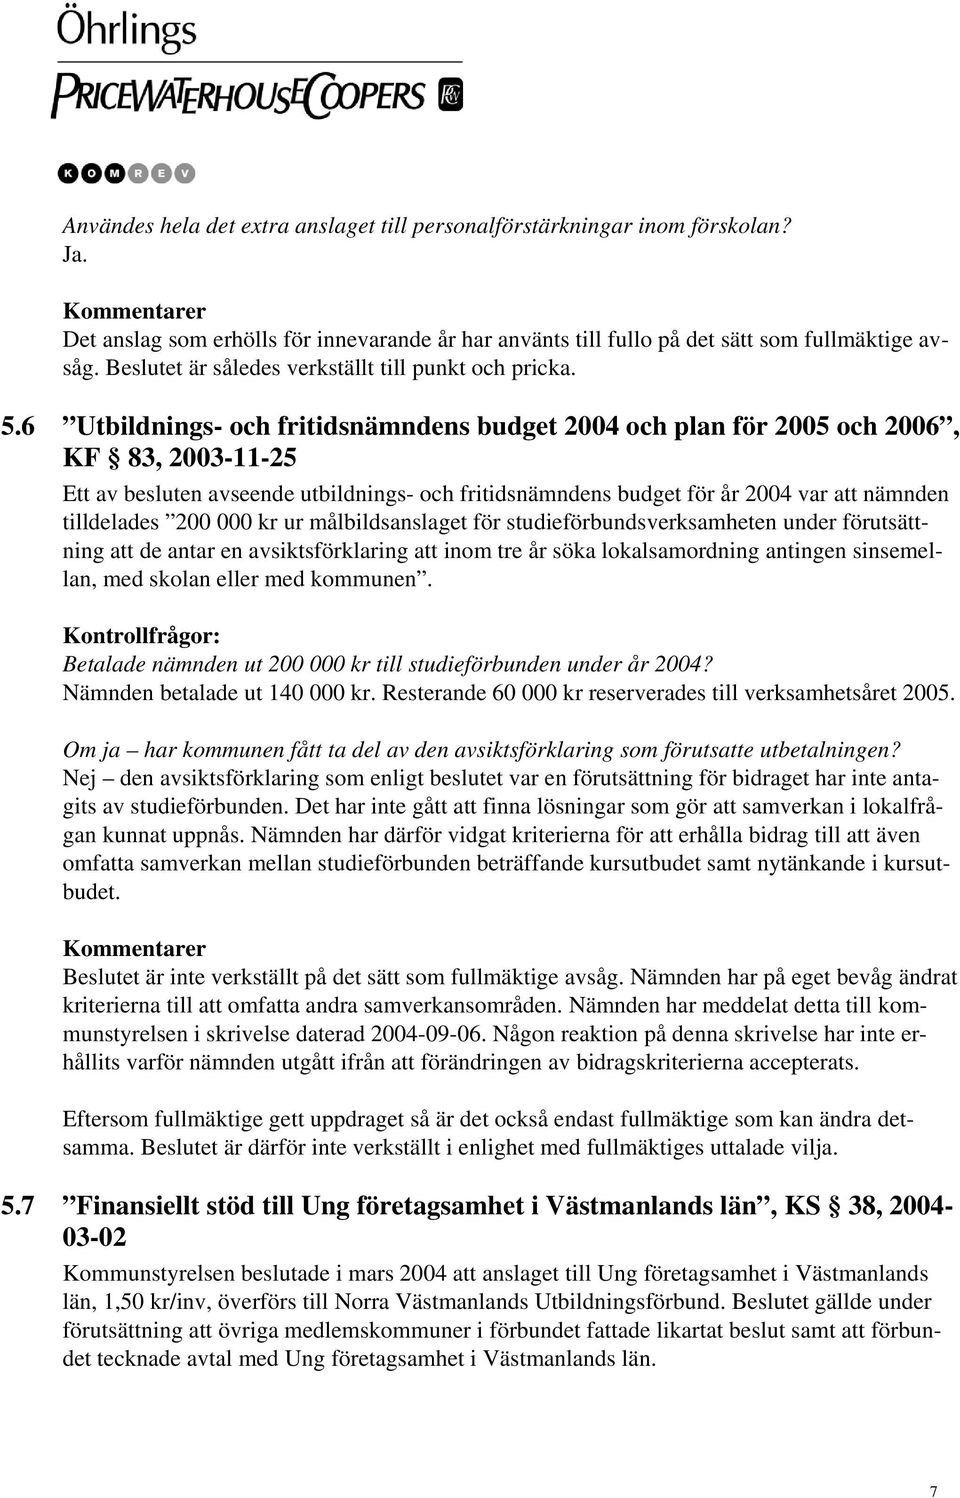 6 Utbildnings- och fritidsnämndens budget 2004 och plan för 2005 och 2006, KF 83, 2003-11-25 Ett av besluten avseende utbildnings- och fritidsnämndens budget för år 2004 var att nämnden tilldelades